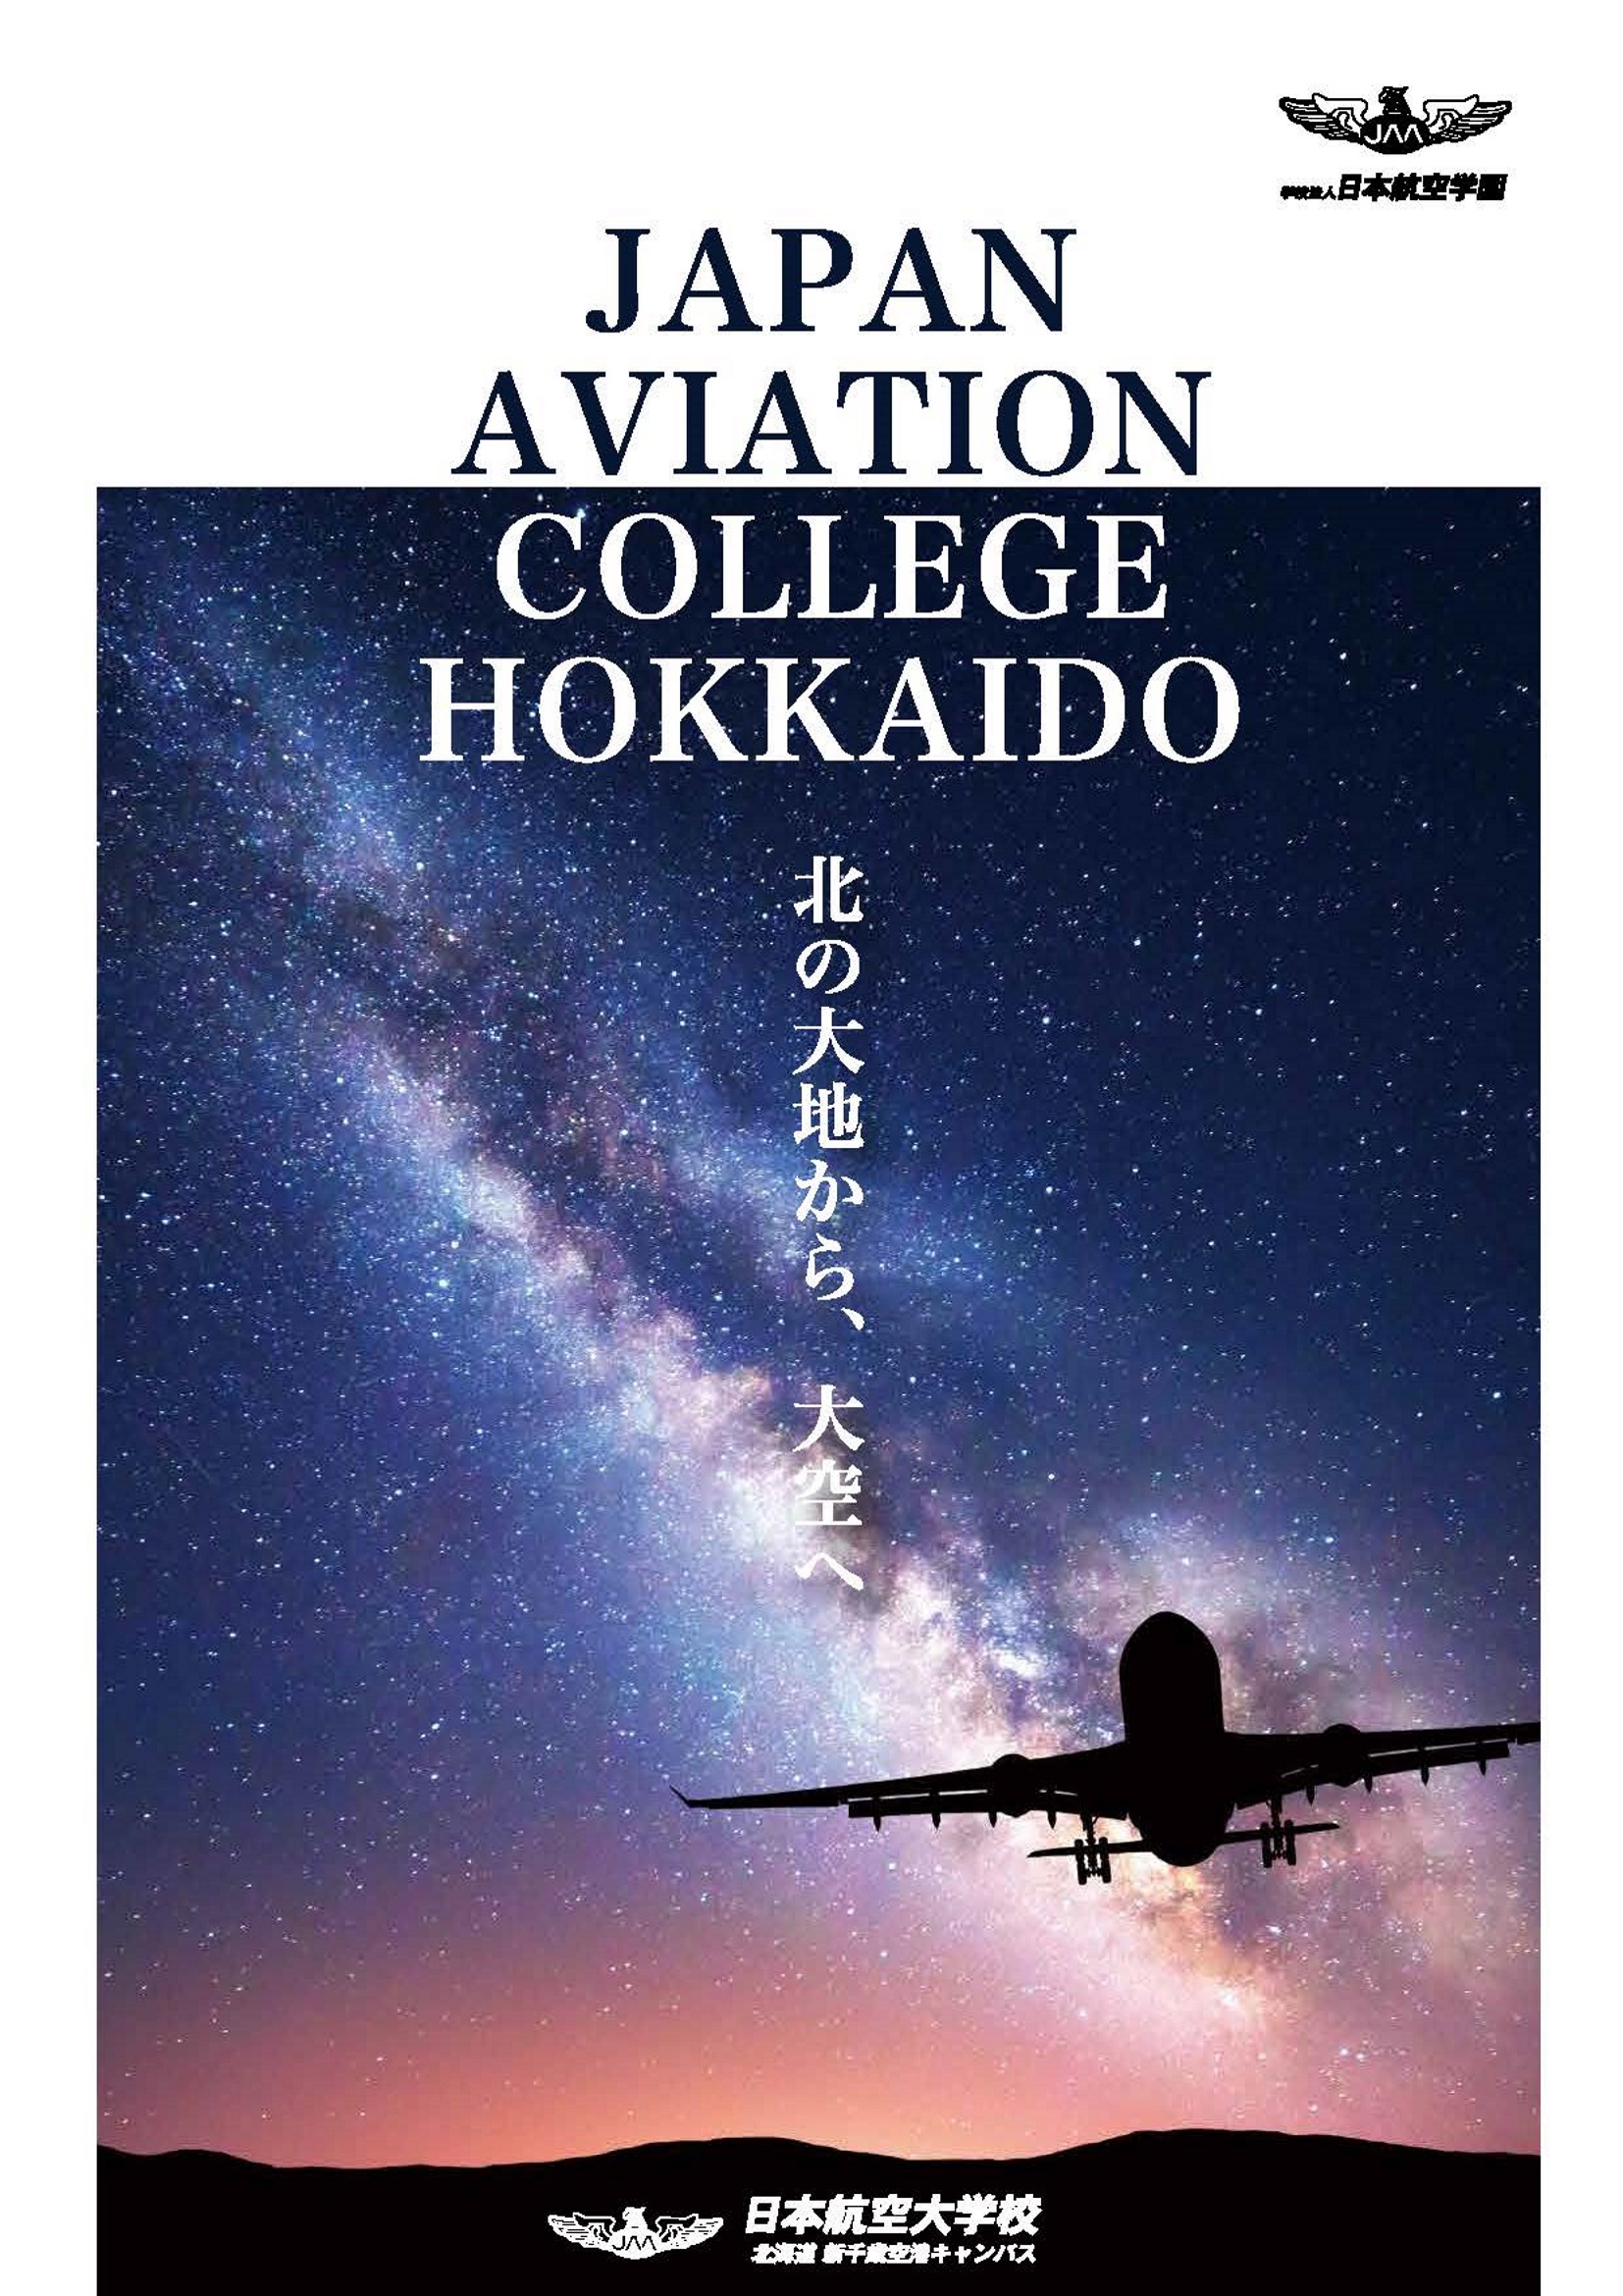 航空大学校北海道千歳キャンパスwebパンフレット